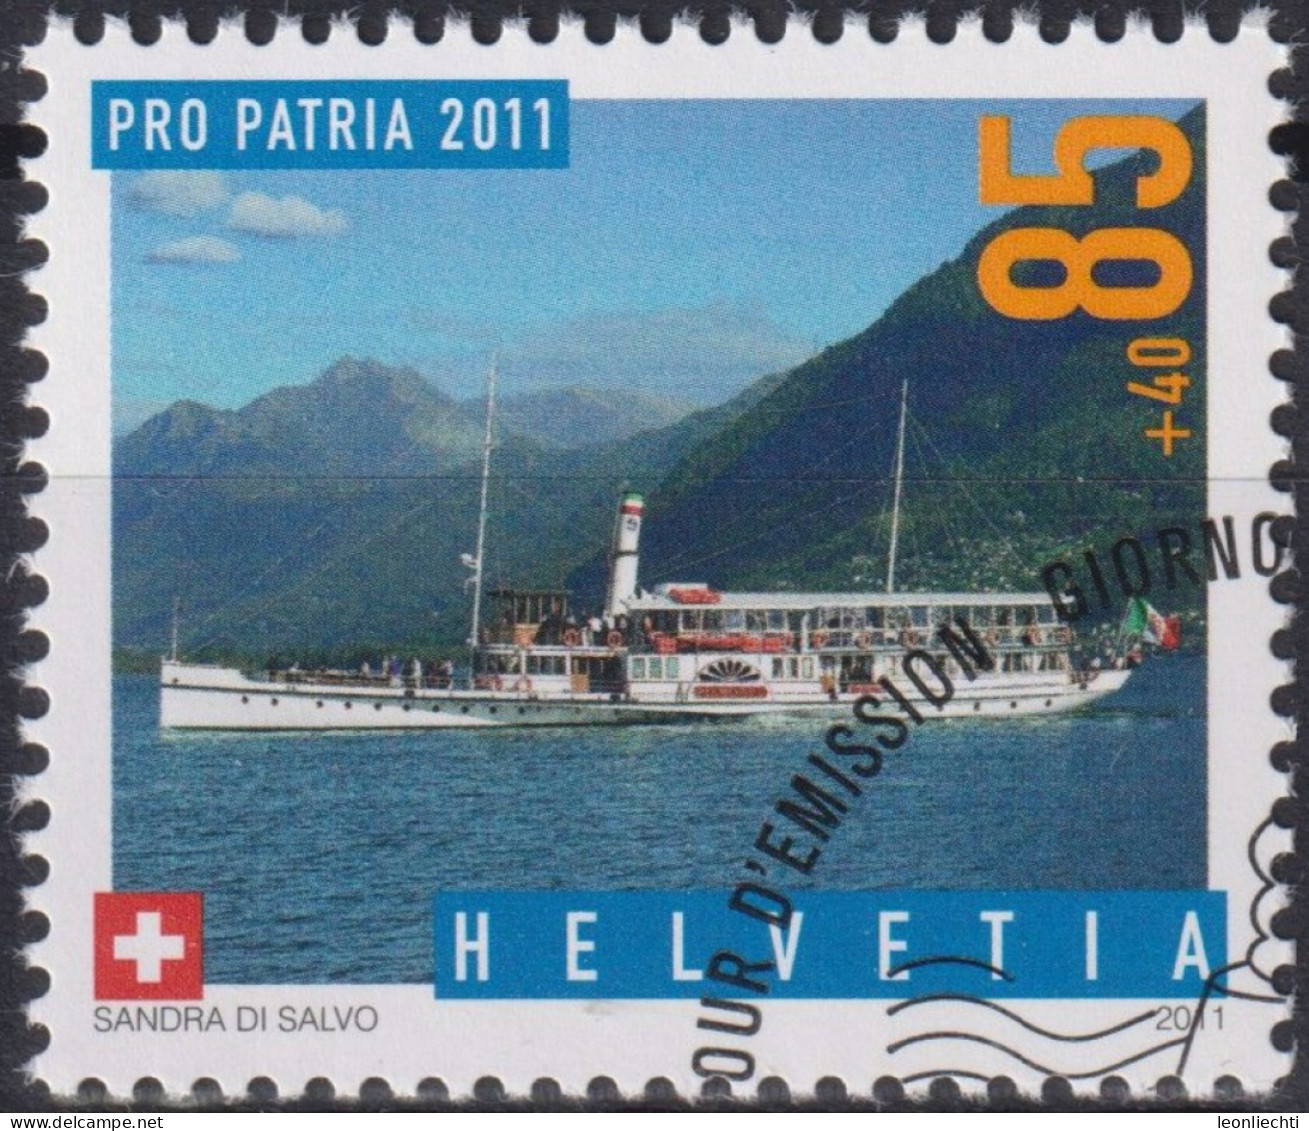 2011 Schweiz Pro Patria, Dampfschiff, Piemonte ⵙ Zum:CH B313, Mi:CH 2204, Yt:CH 2125 - Oblitérés